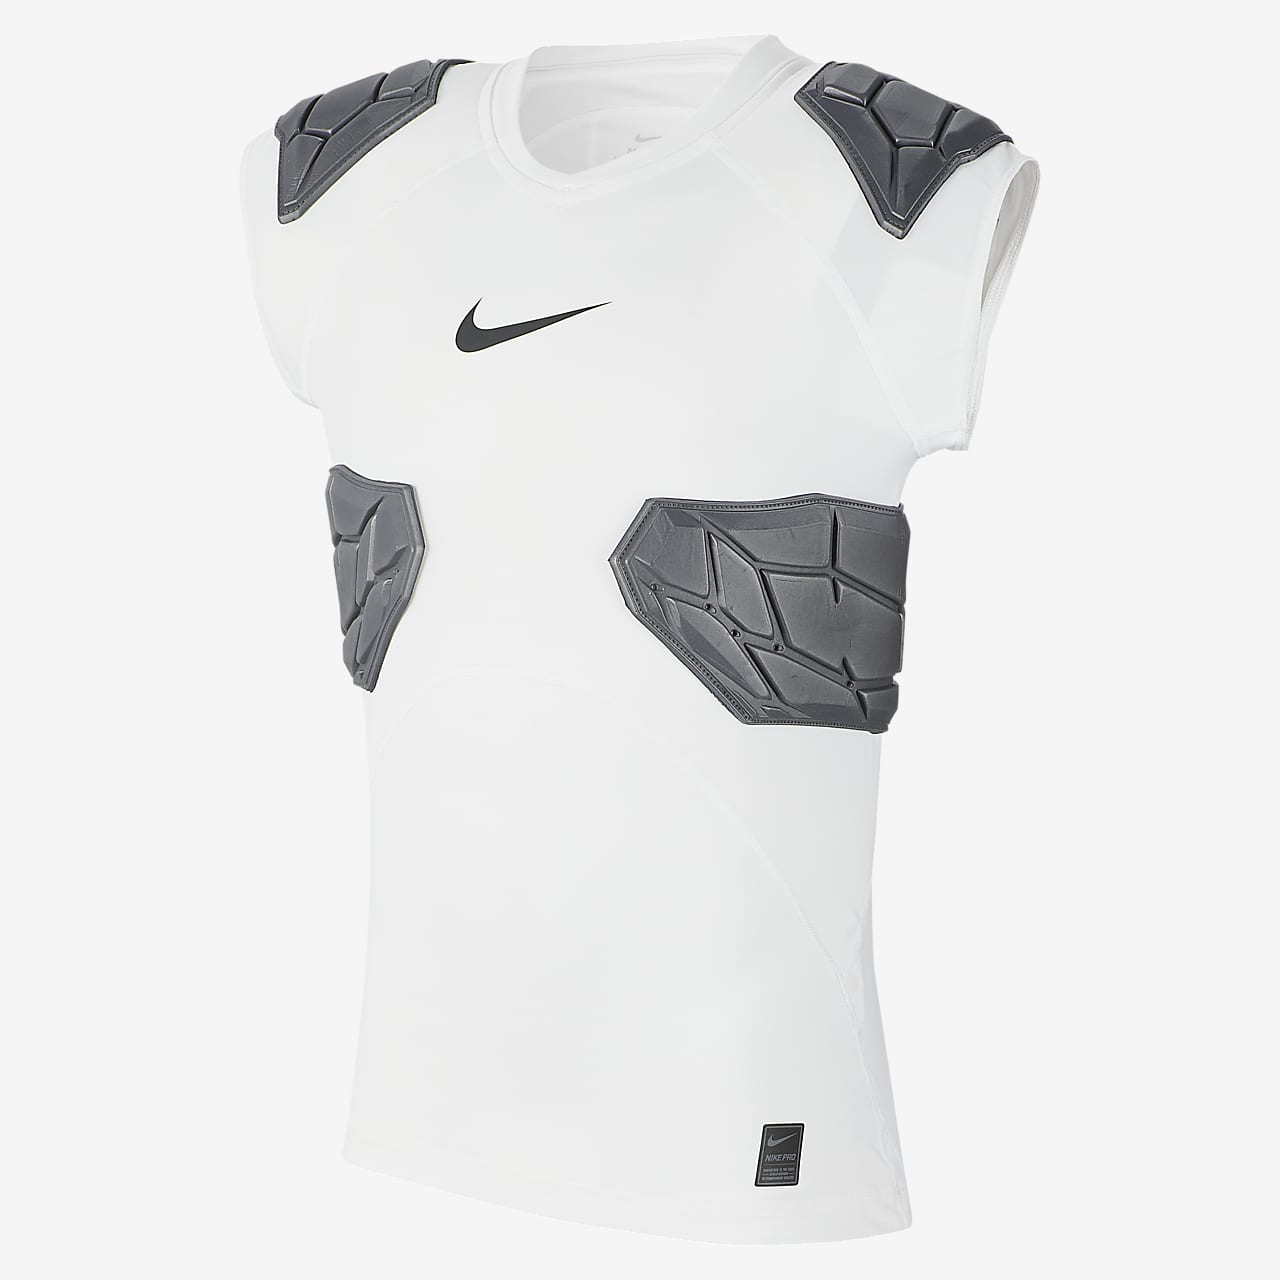 Custom Nike Pro Sleeveless Compression Shirts